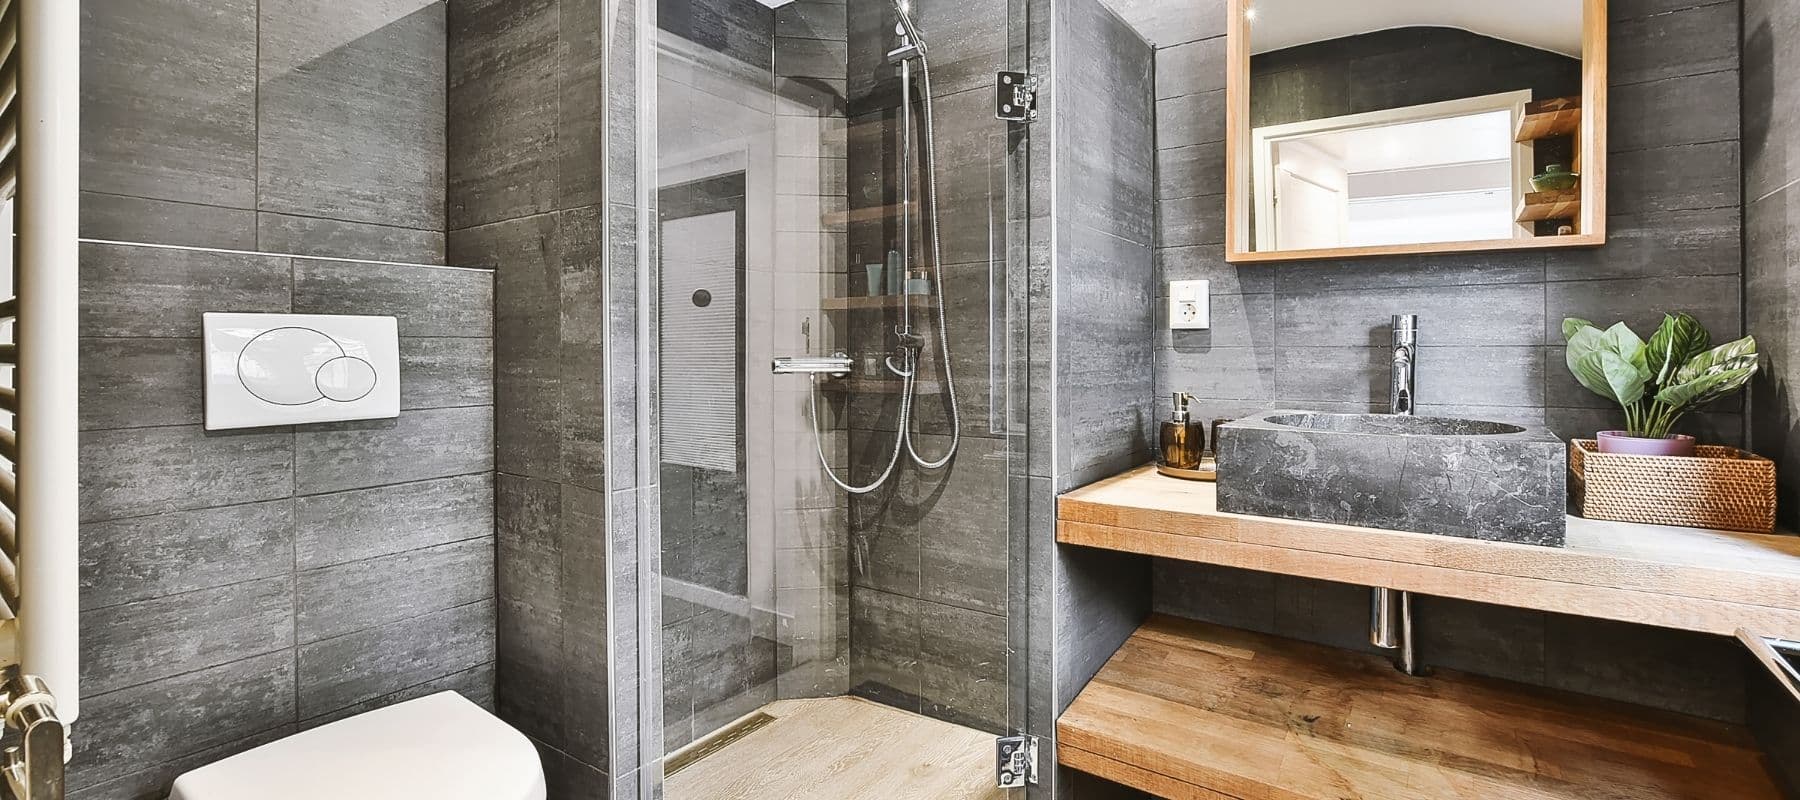 slate bathroom with wood fixtures